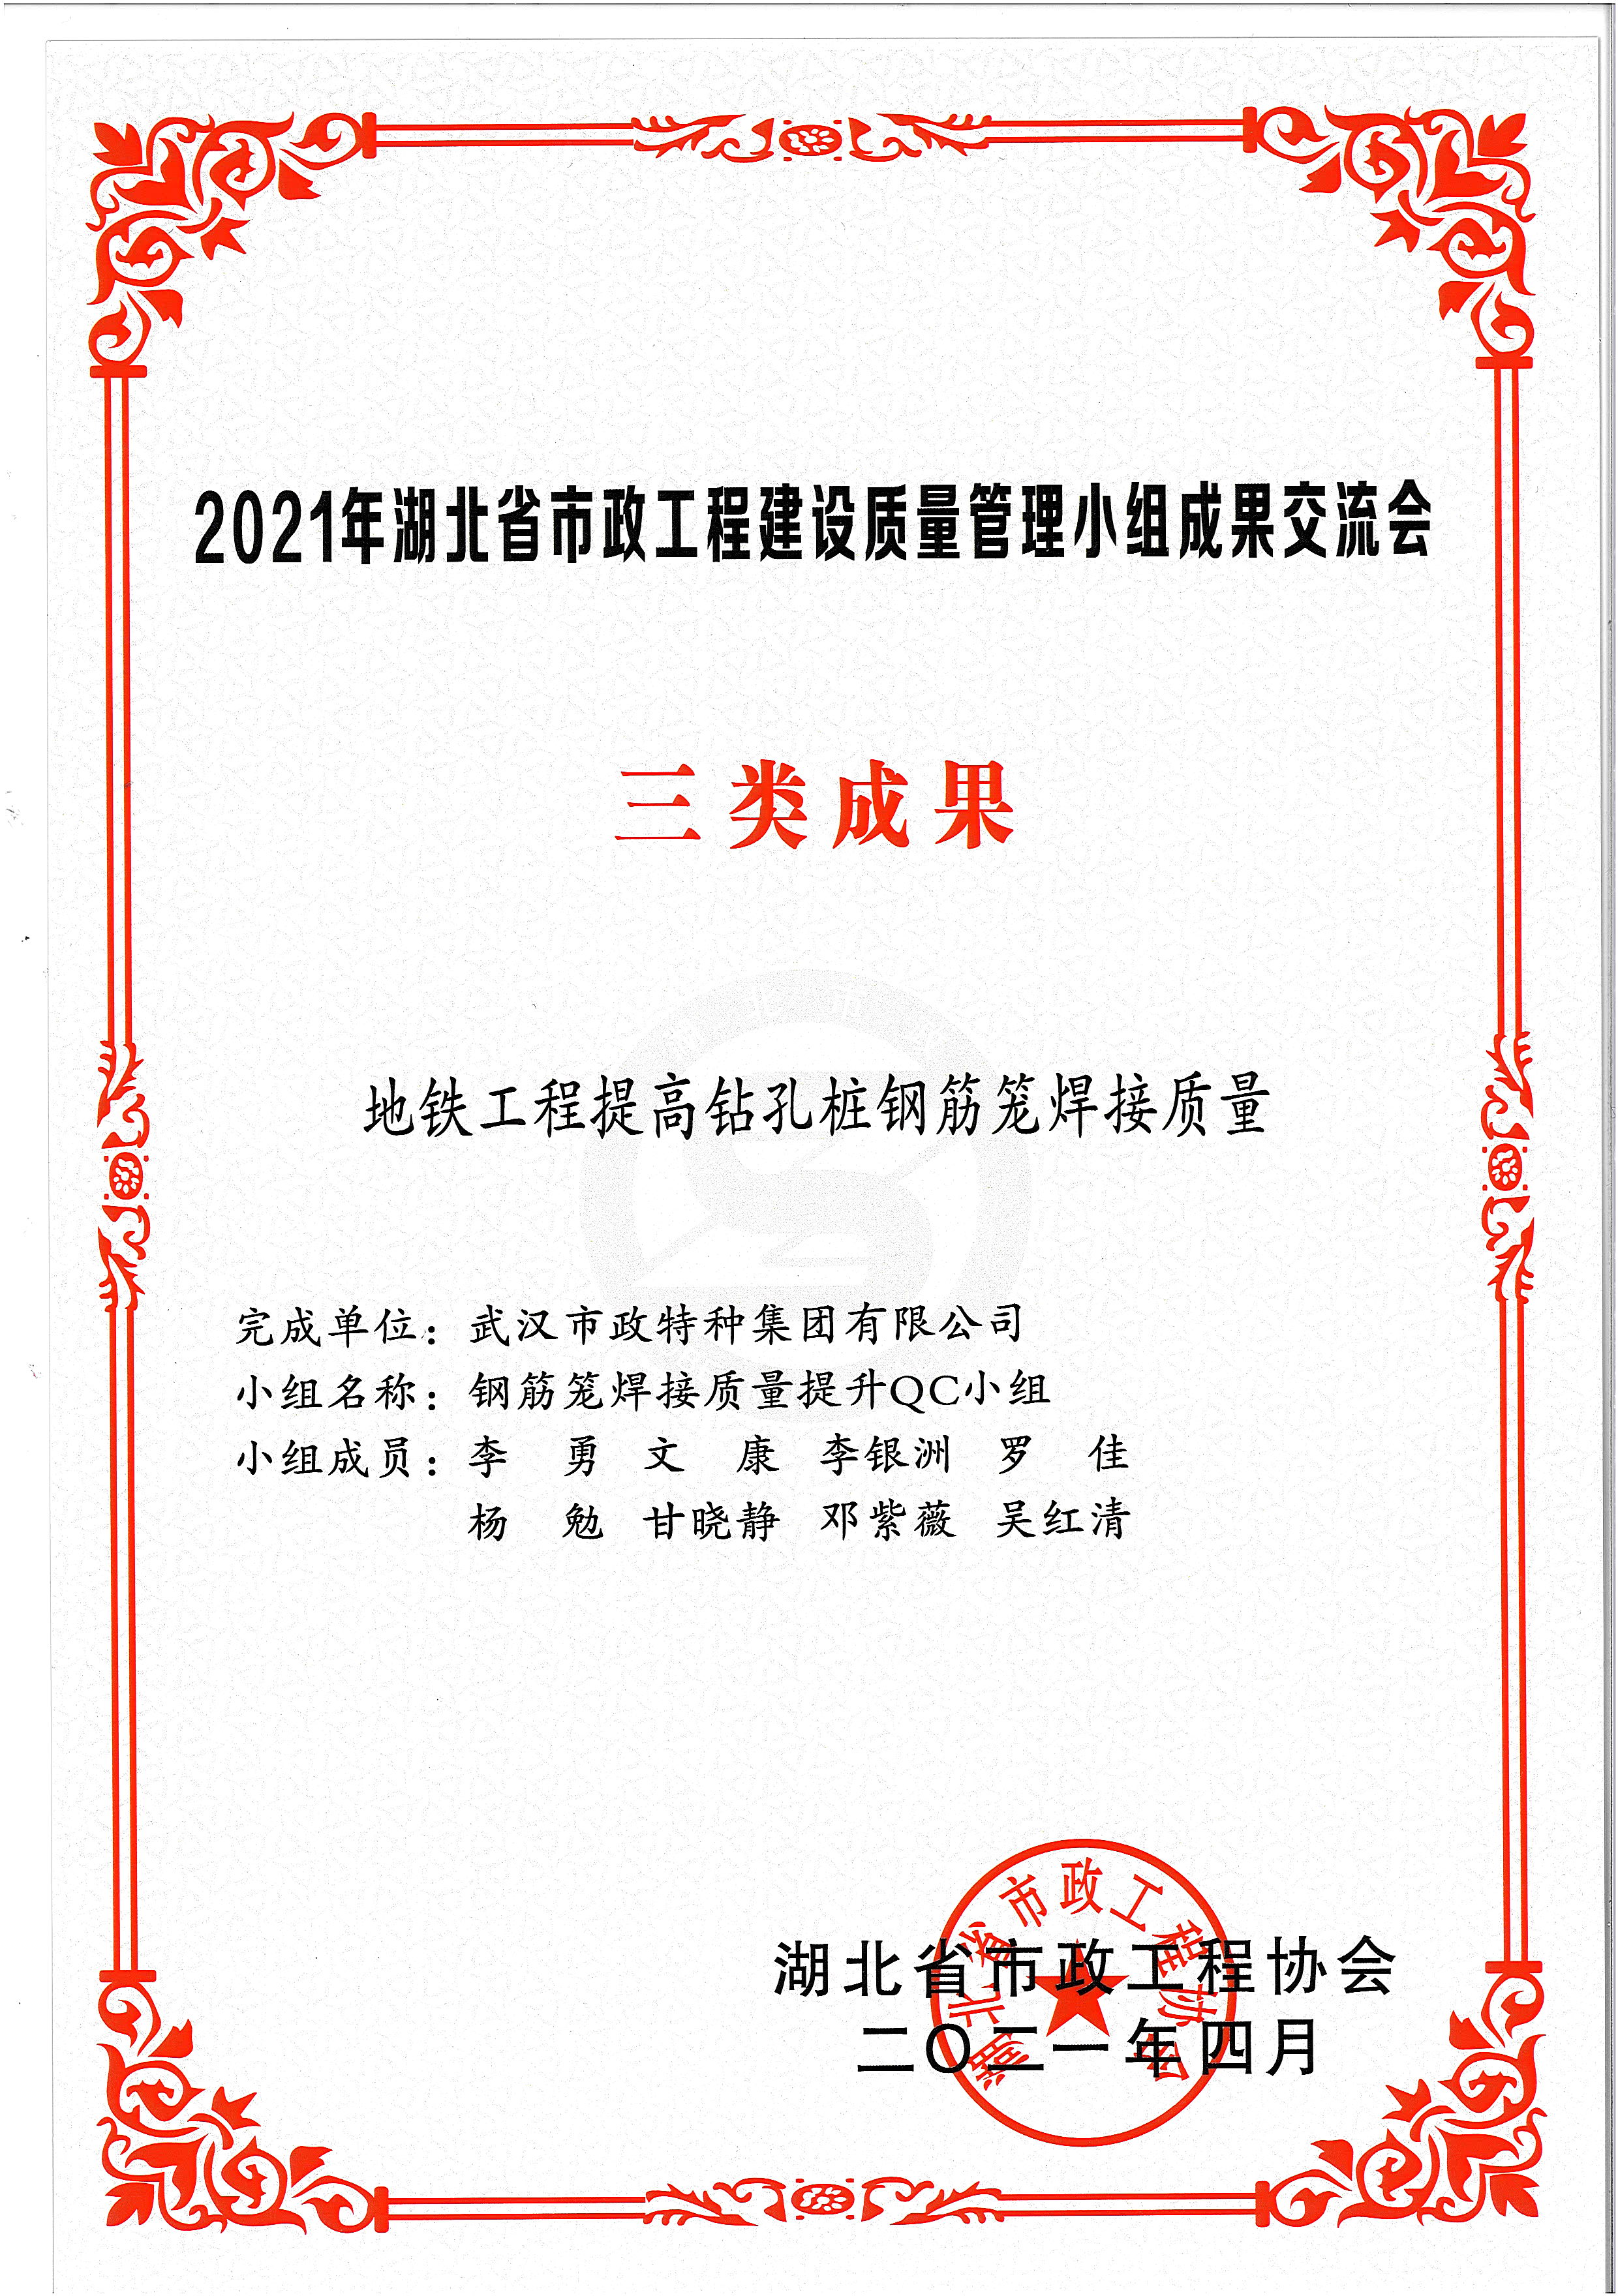 湖北省市政协会QC成果奖——地铁工程提高钻孔桩钢筋笼焊接质量